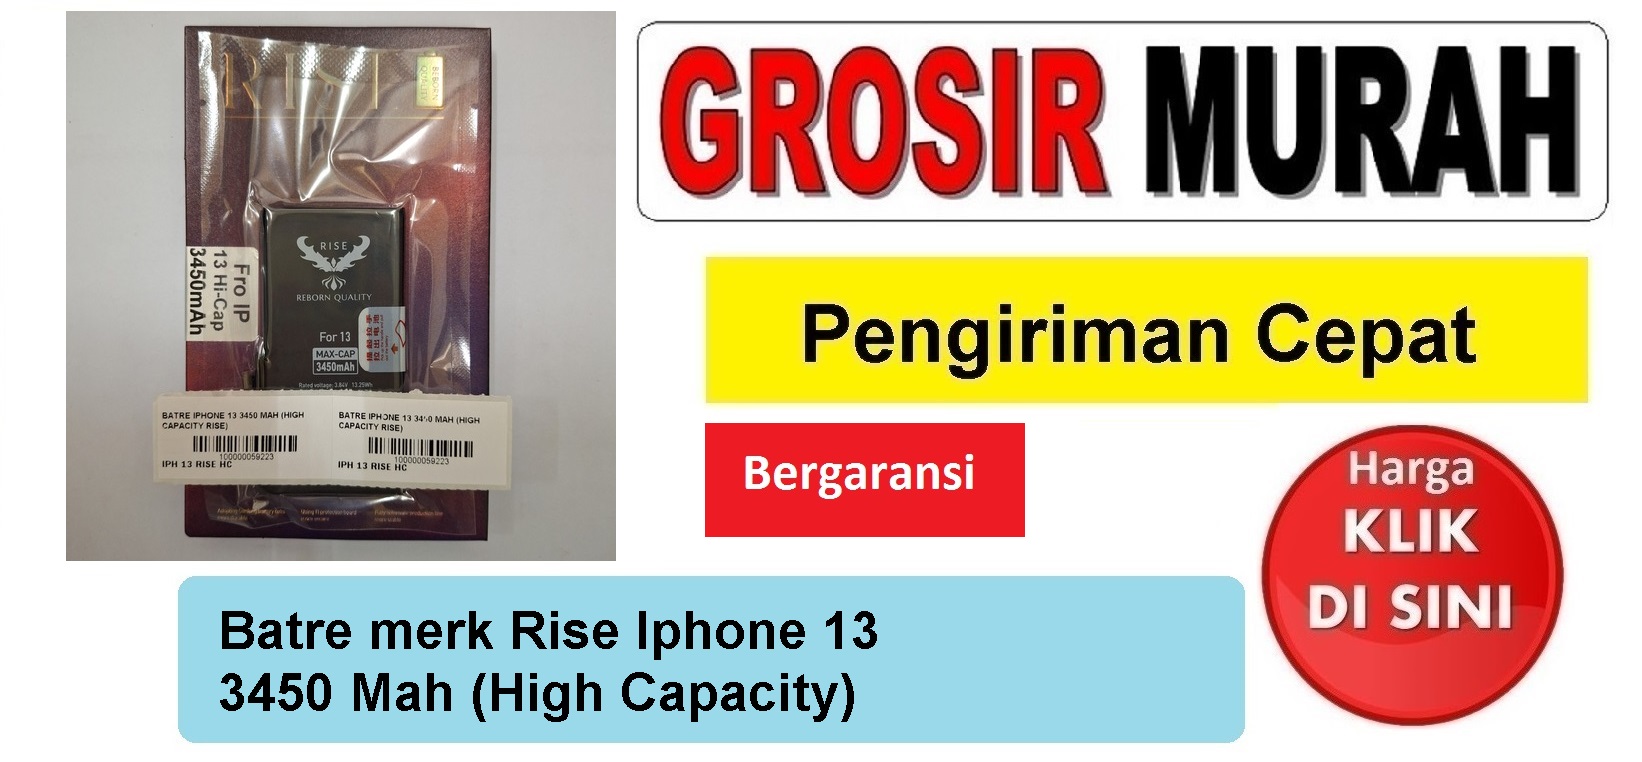 Batre merk Rise Iphone 13 3450 Mah (High Capacity) Baterai Battery Bergaransi Batere